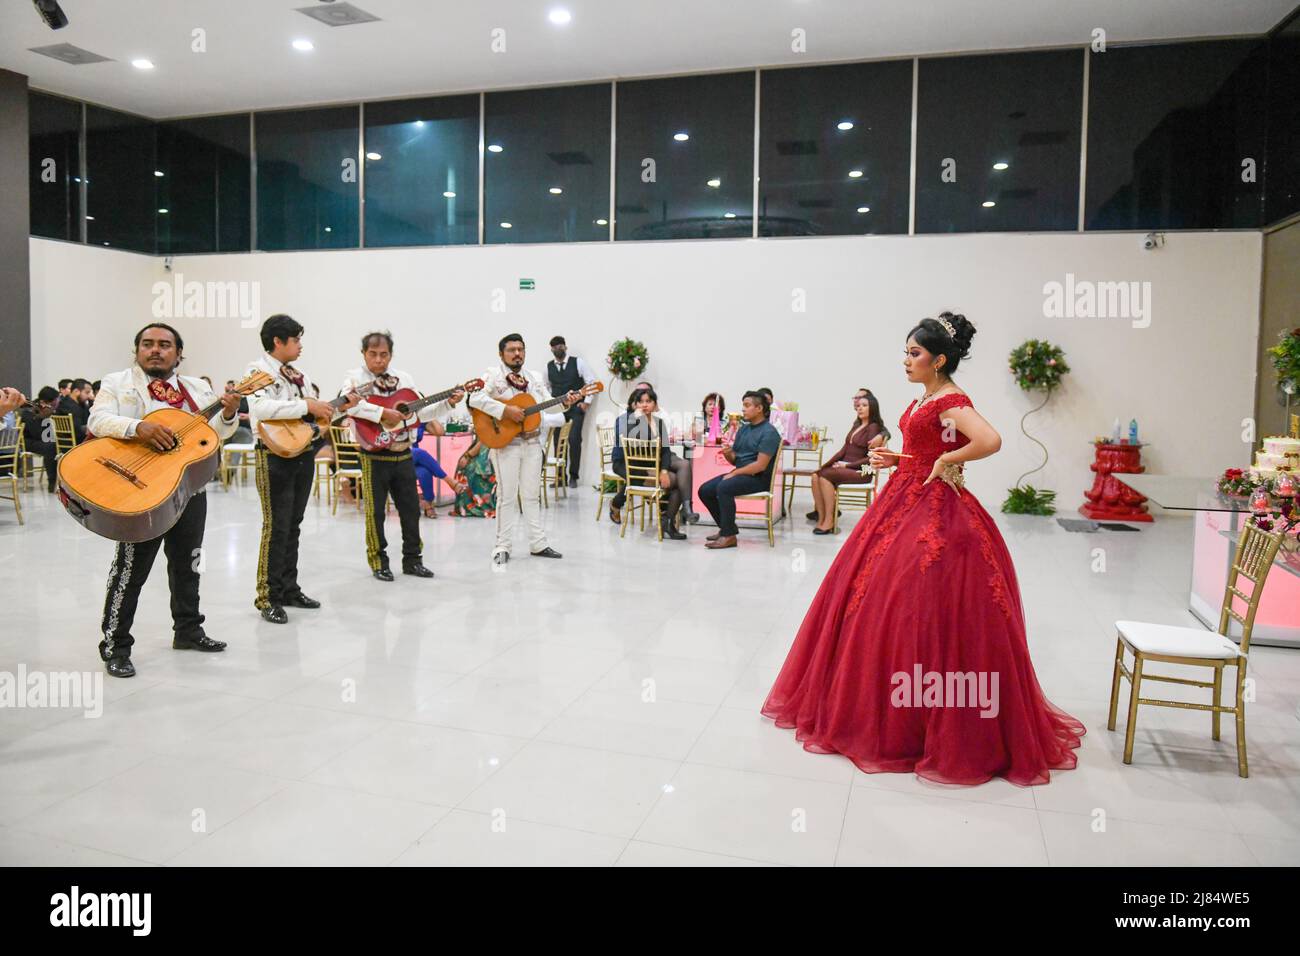 Mariachis feiern den Quinceañera des 15.. Geburtstages eines mexikanischen Mädchens. Dieser besondere Anlass wird von Mädchen in ganz Lateinamerika / Campeche, Mexiko, gefeiert Stockfoto